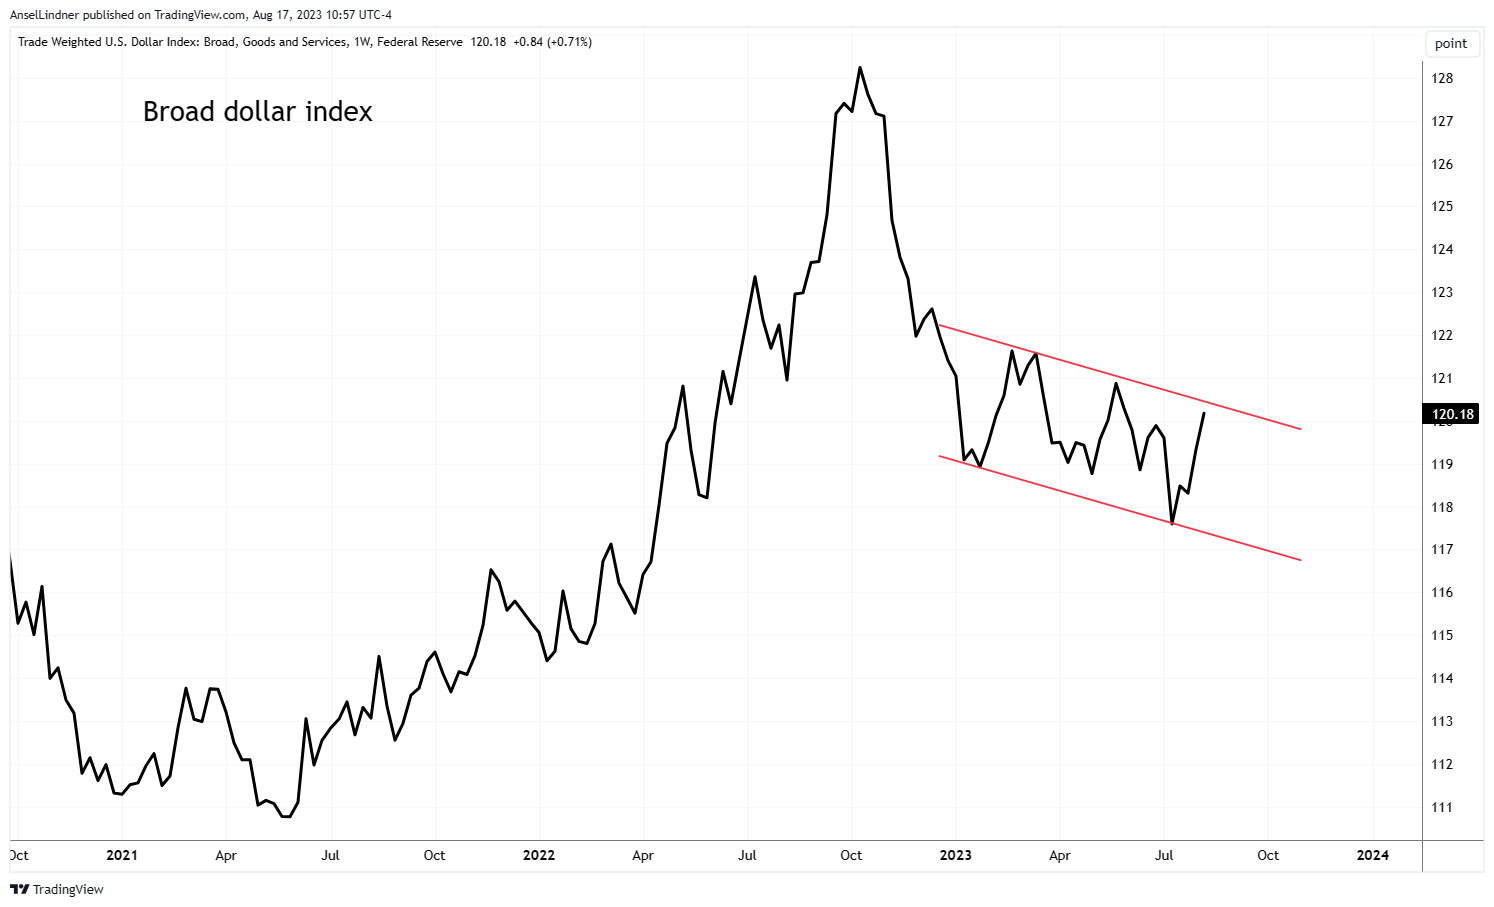 Broad dollar index weekly chart